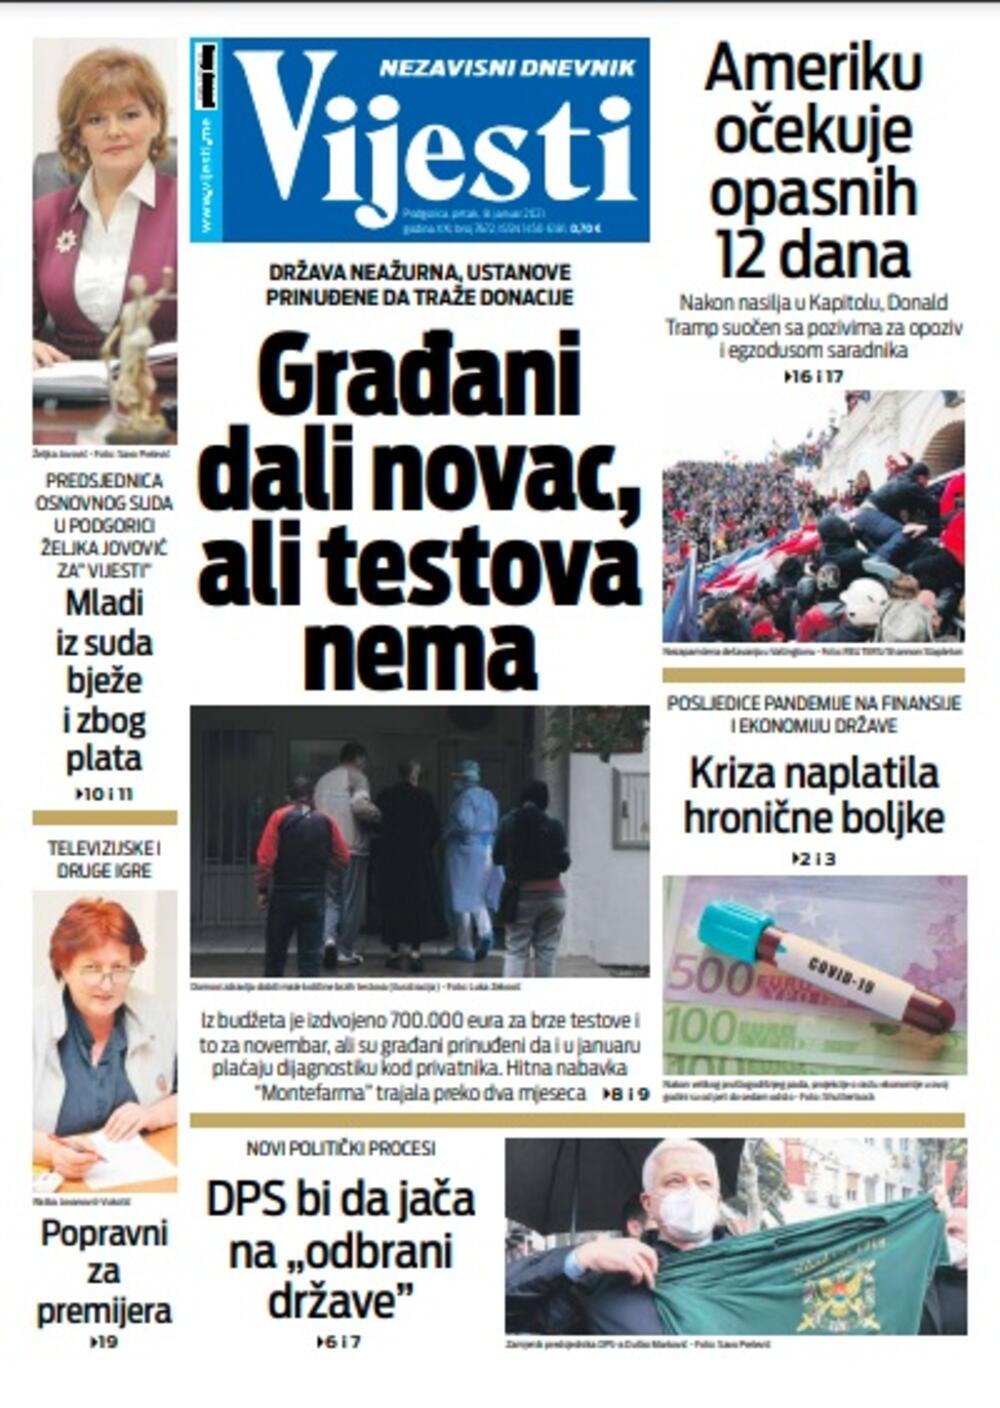 Naslovna strana "Vijesti" za petak 8. januar 2021. godine, Foto: Vijesti